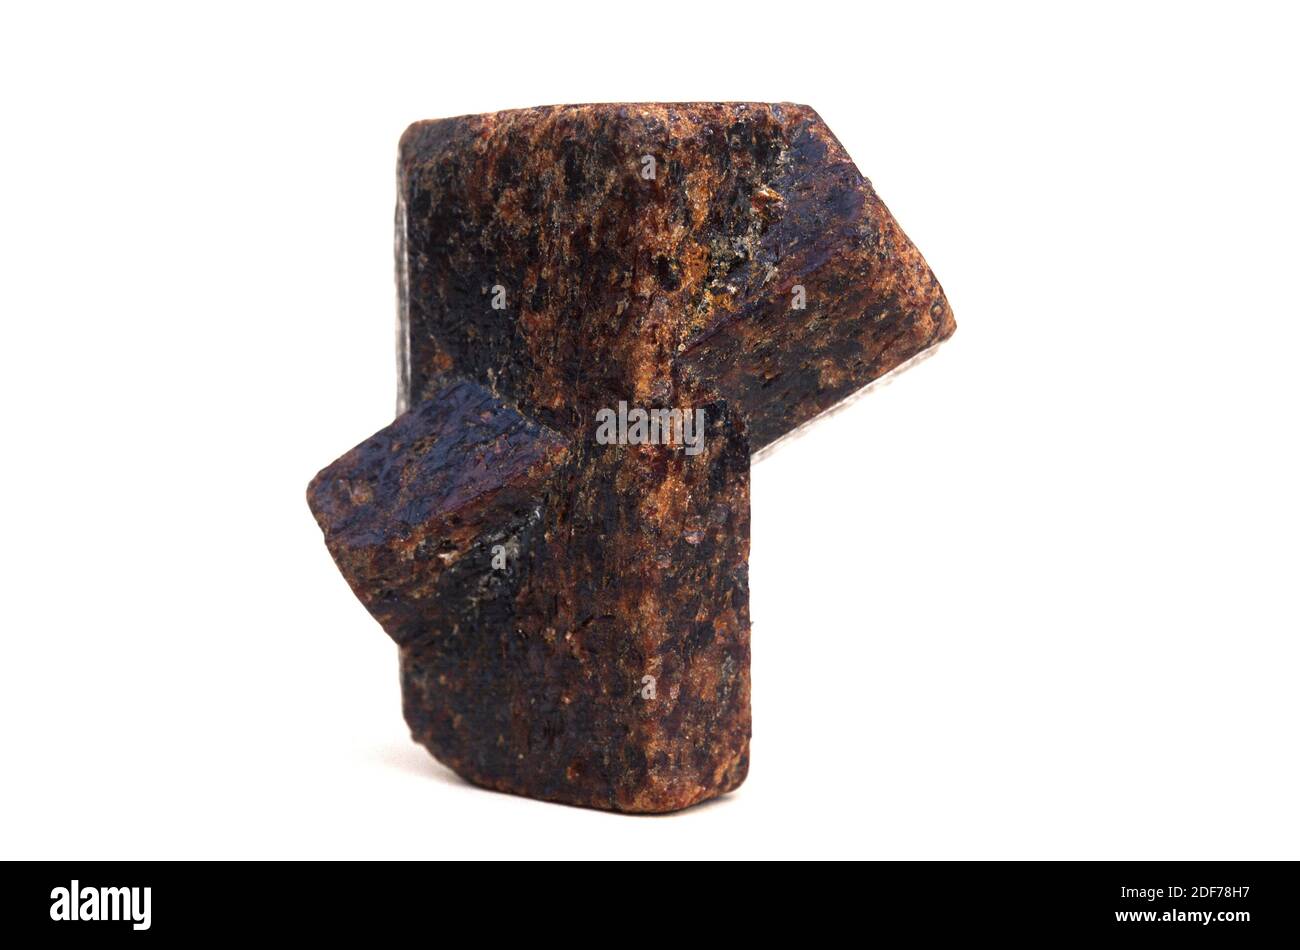 La estaurolita es un mineral de silicato de hierro aluminio. Presentación en forma de cruz. Foto de stock